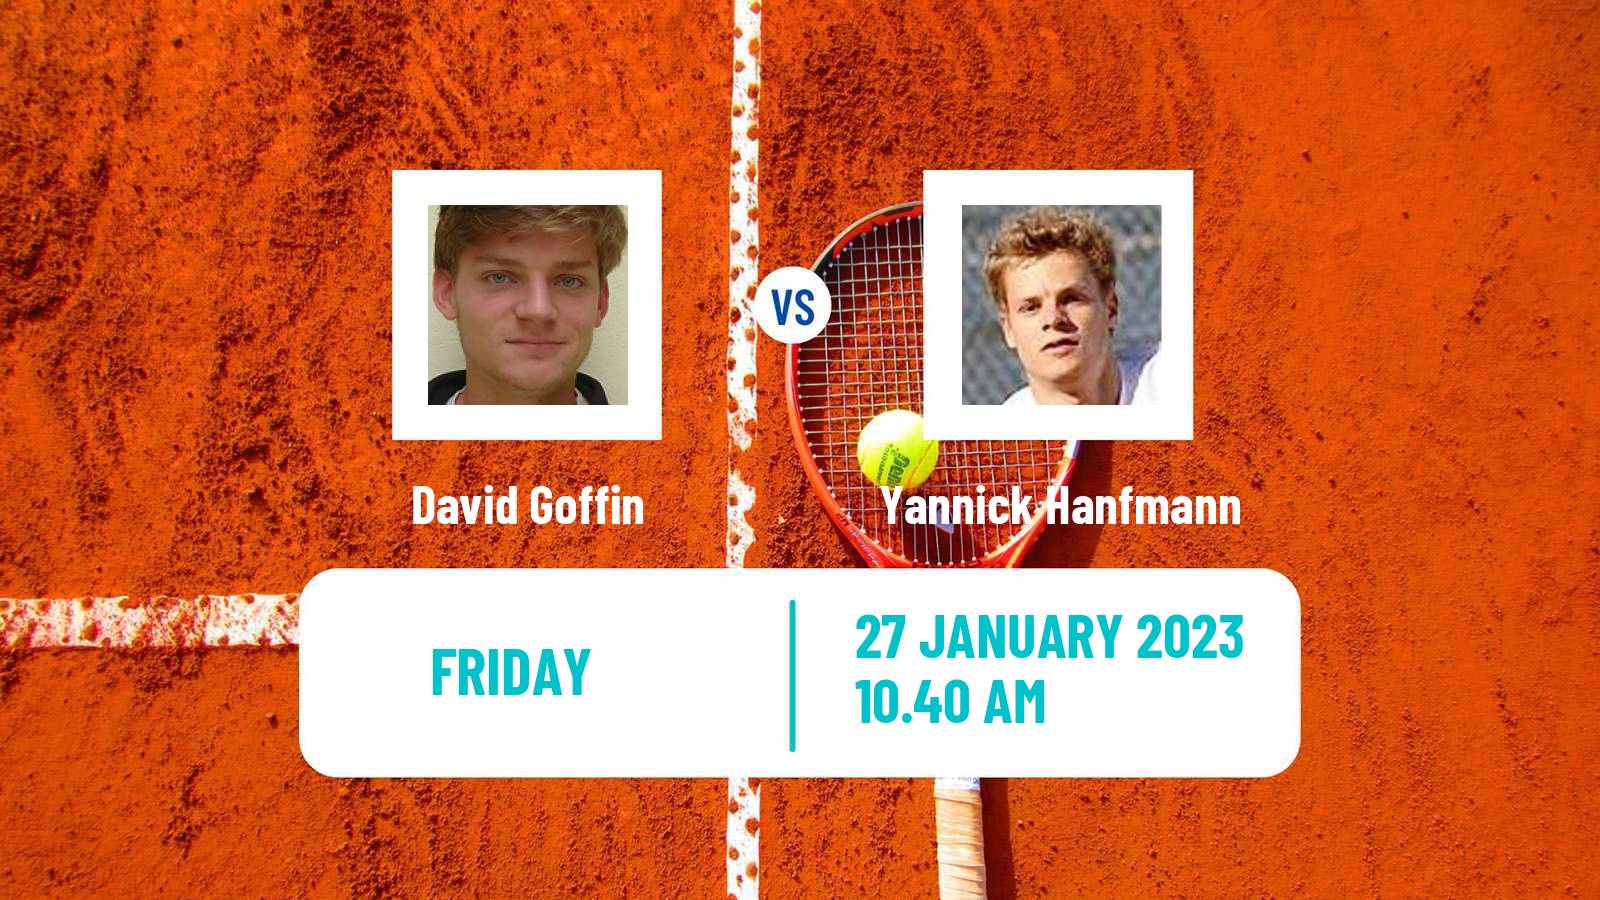 Tennis ATP Challenger David Goffin - Yannick Hanfmann